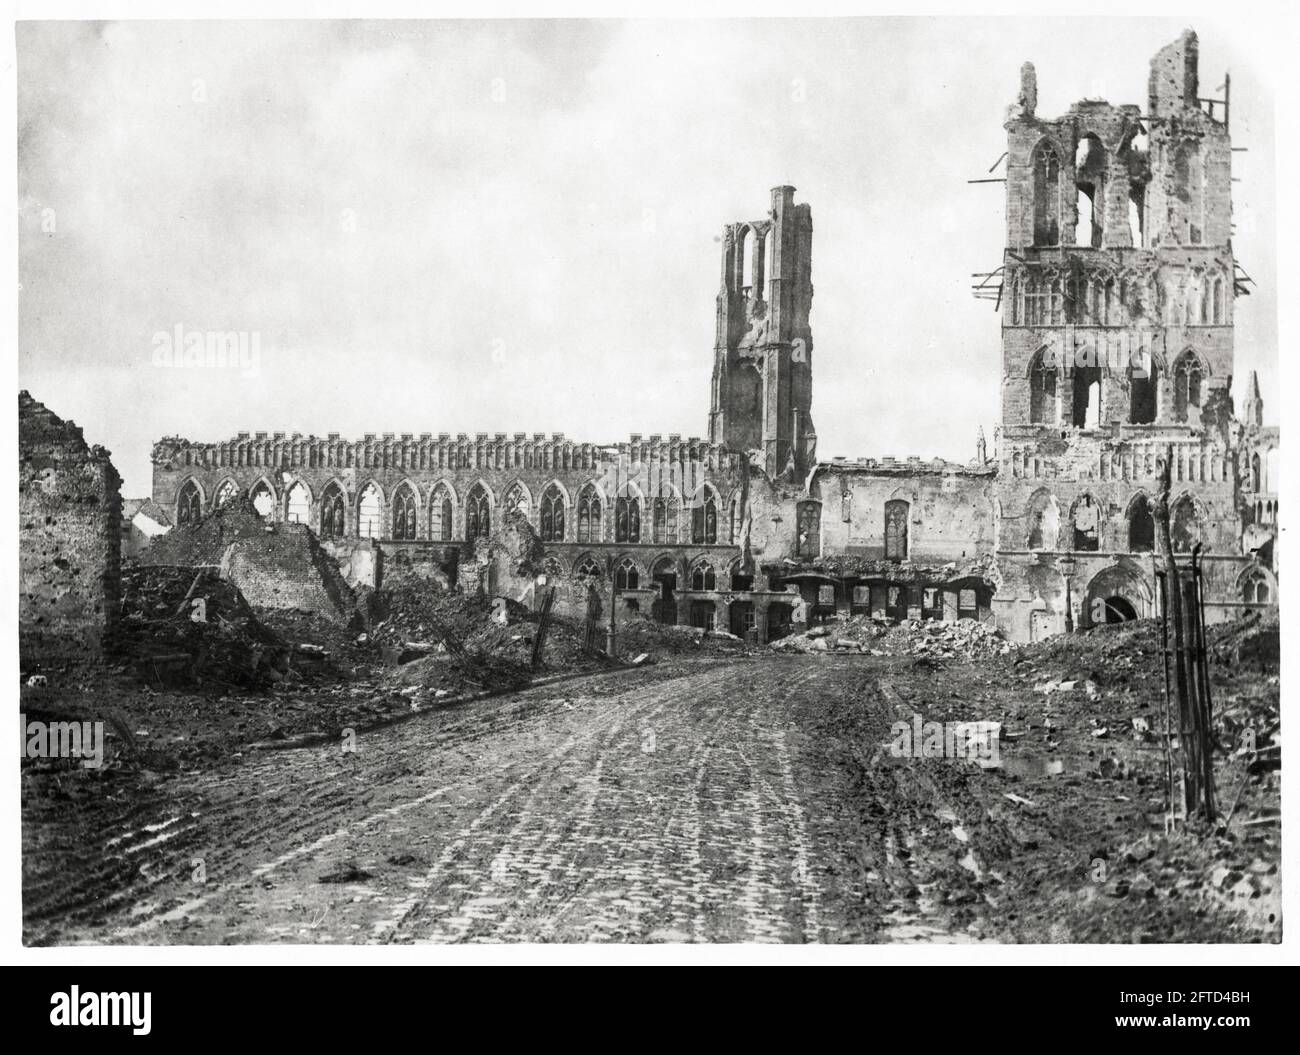 Première Guerre mondiale, première Guerre mondiale, front occidental - les vestiges d'un Hall de tissus lourdement bombardé., Ypres (Lakenhal, Lakenhalle), Belgique Banque D'Images